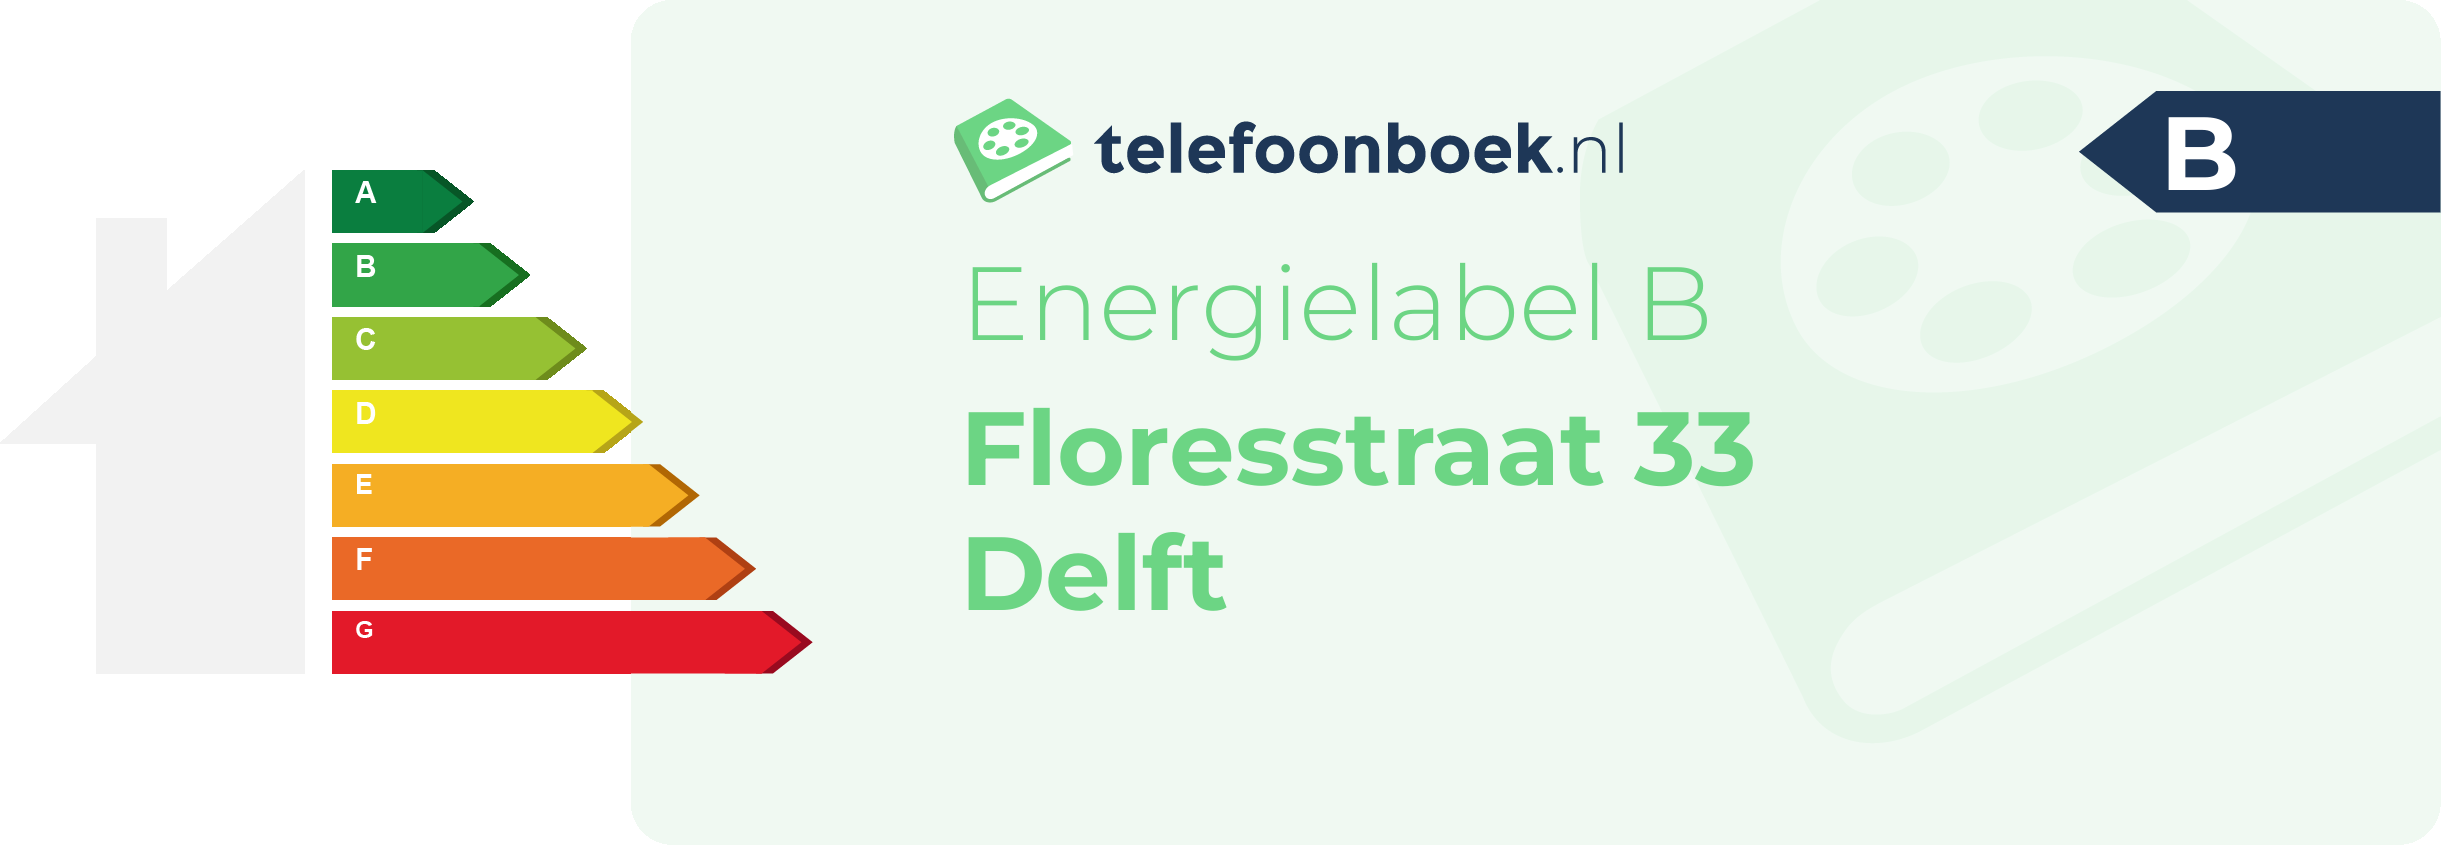 Energielabel Floresstraat 33 Delft